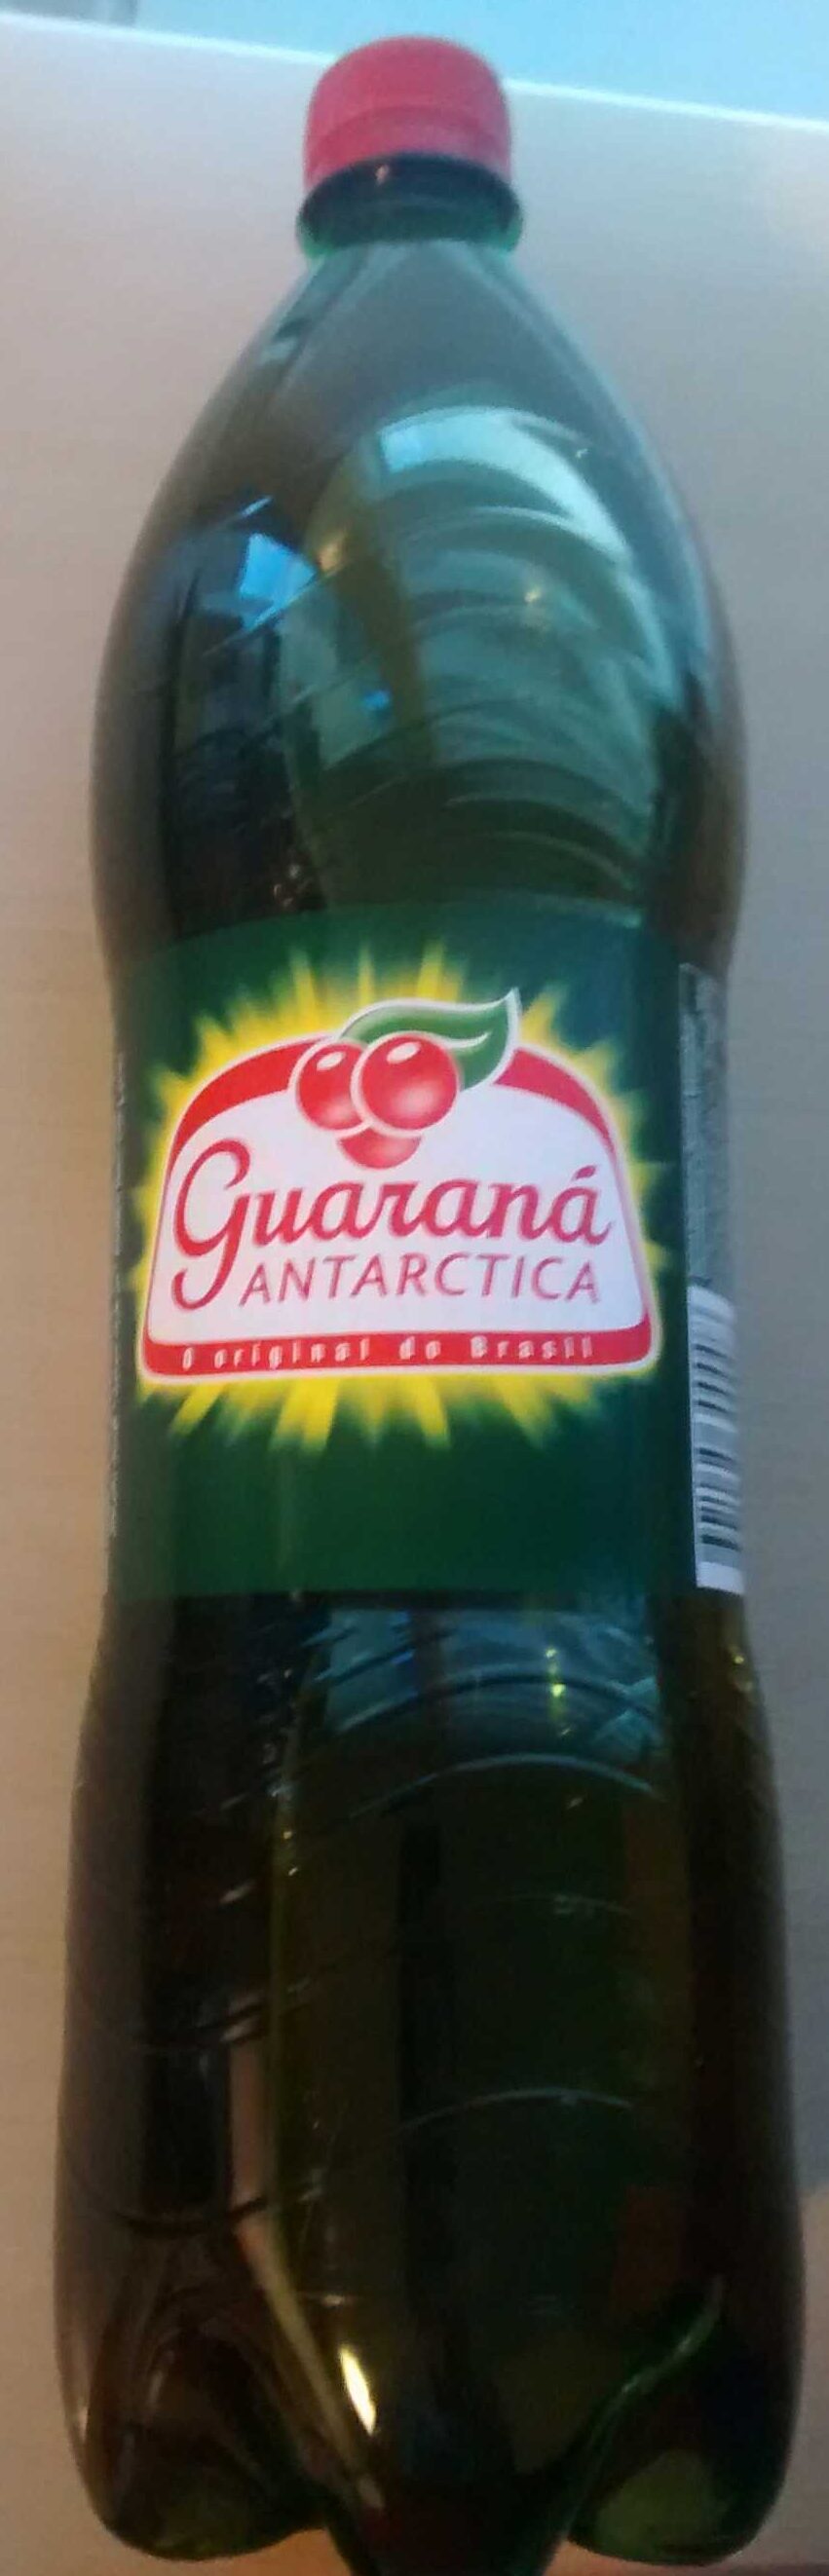 Guarana Antarctica - Produkt - es